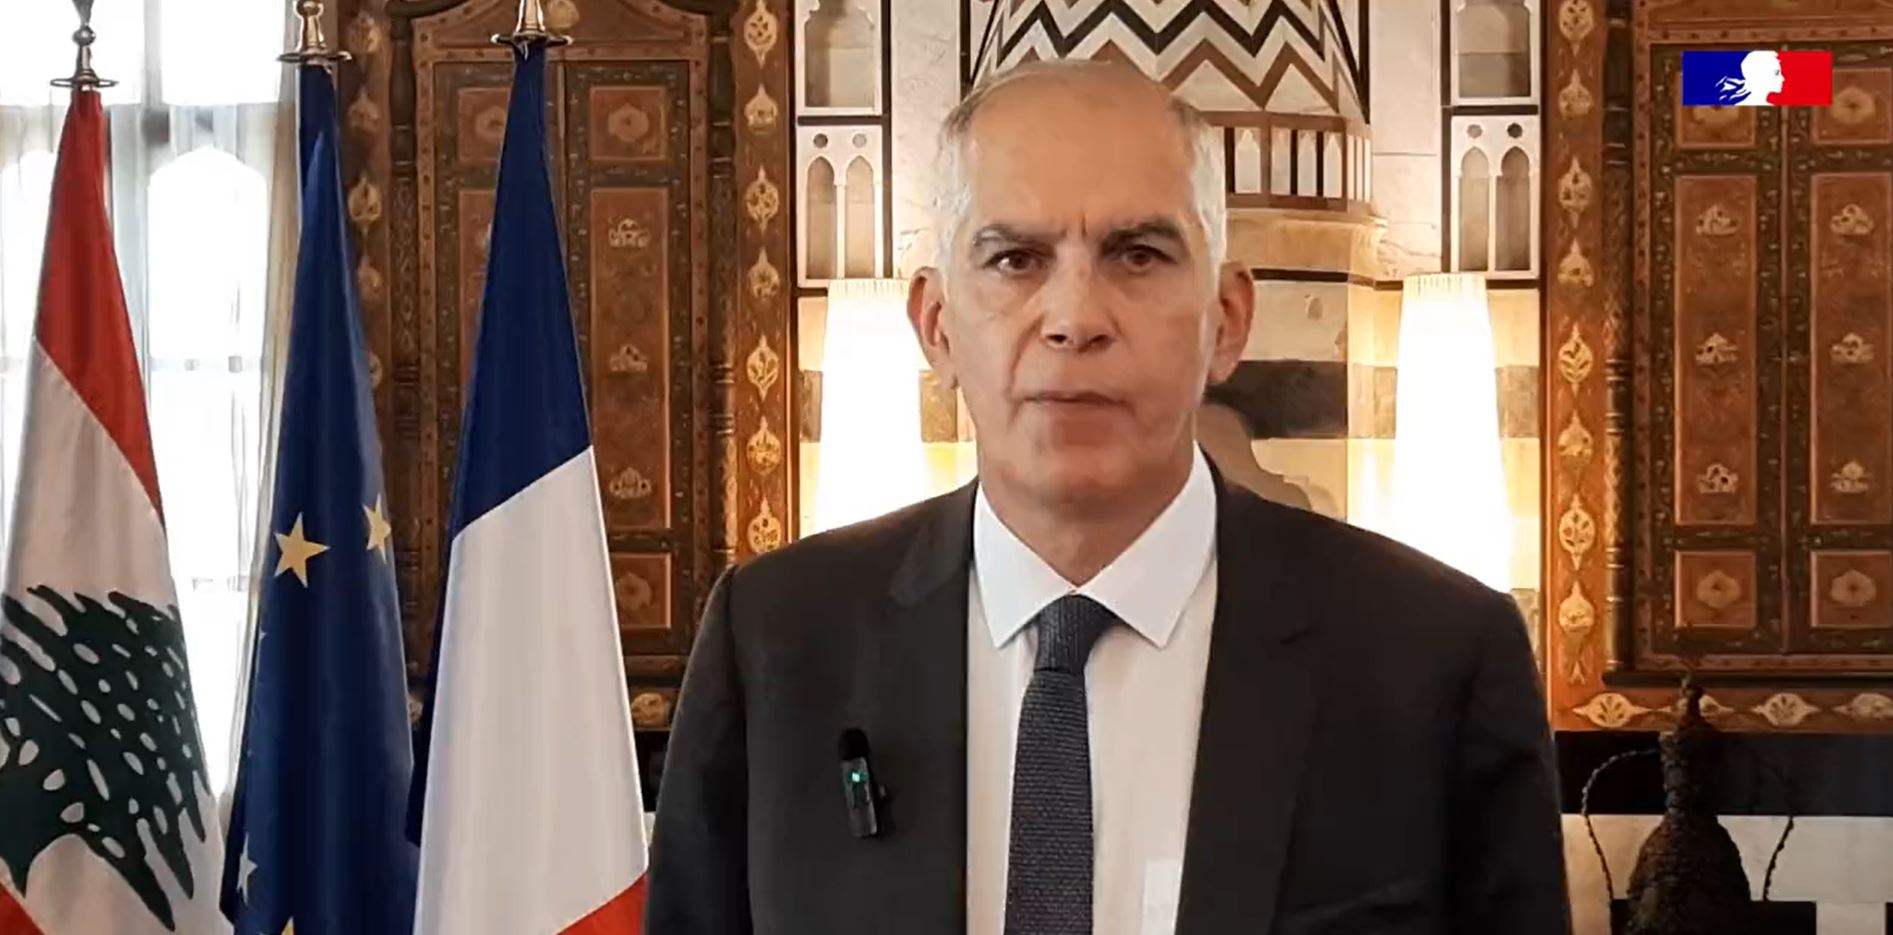 السفير الفرنسي هيرفي ماغرو‎ : كثيرة هي التحدّيات لكنّني واثق من أننا سنتمكّن معاً من الحفاظ على صداقة فرنسية -لبنانية متجذّرة في التاريخ